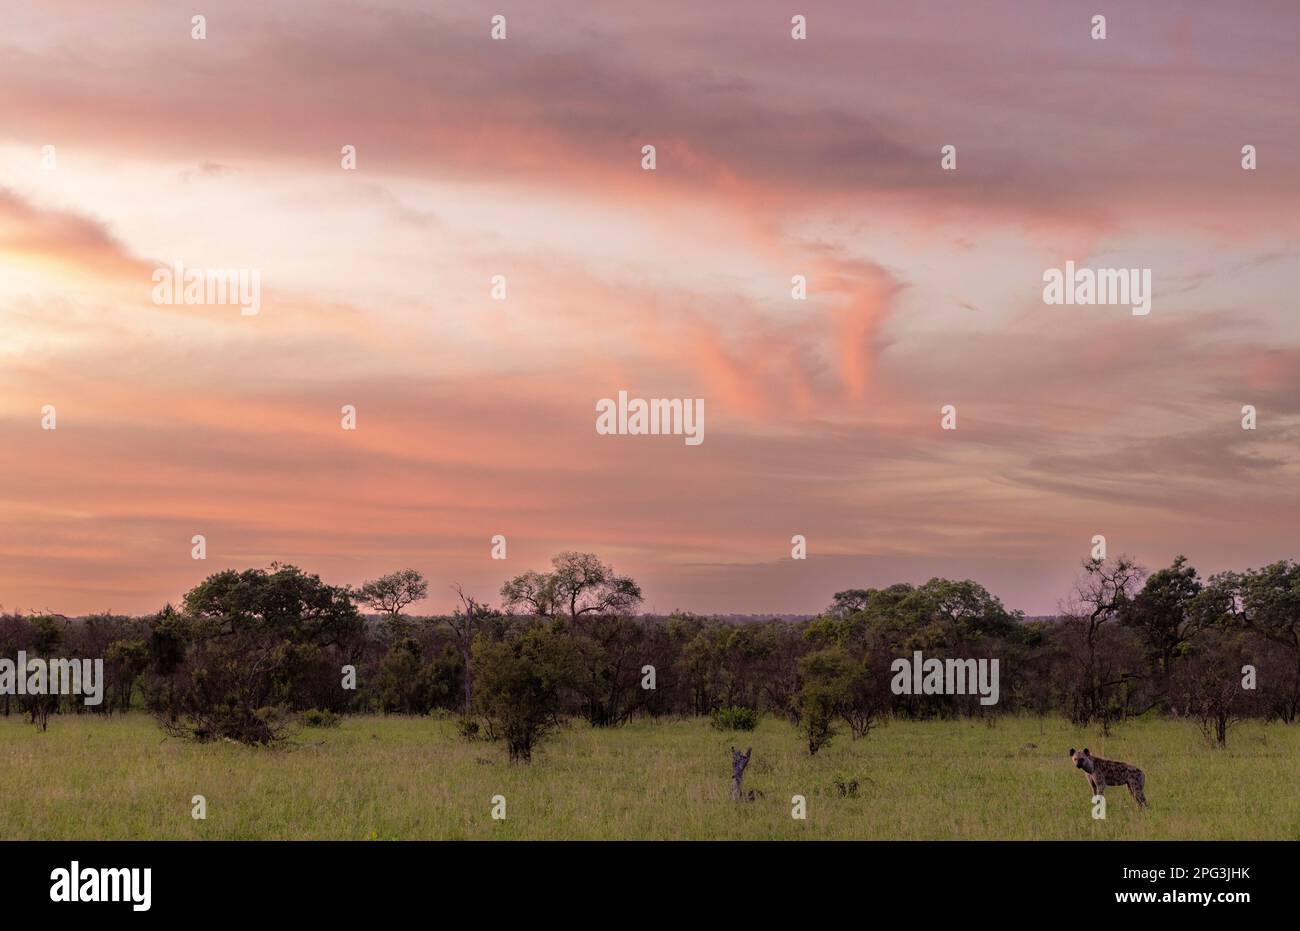 Stockfoto eines stimmungsvollen Sonnenuntergangs mit einer einsamen Hyäne in einer offenen Savanne Stockfoto